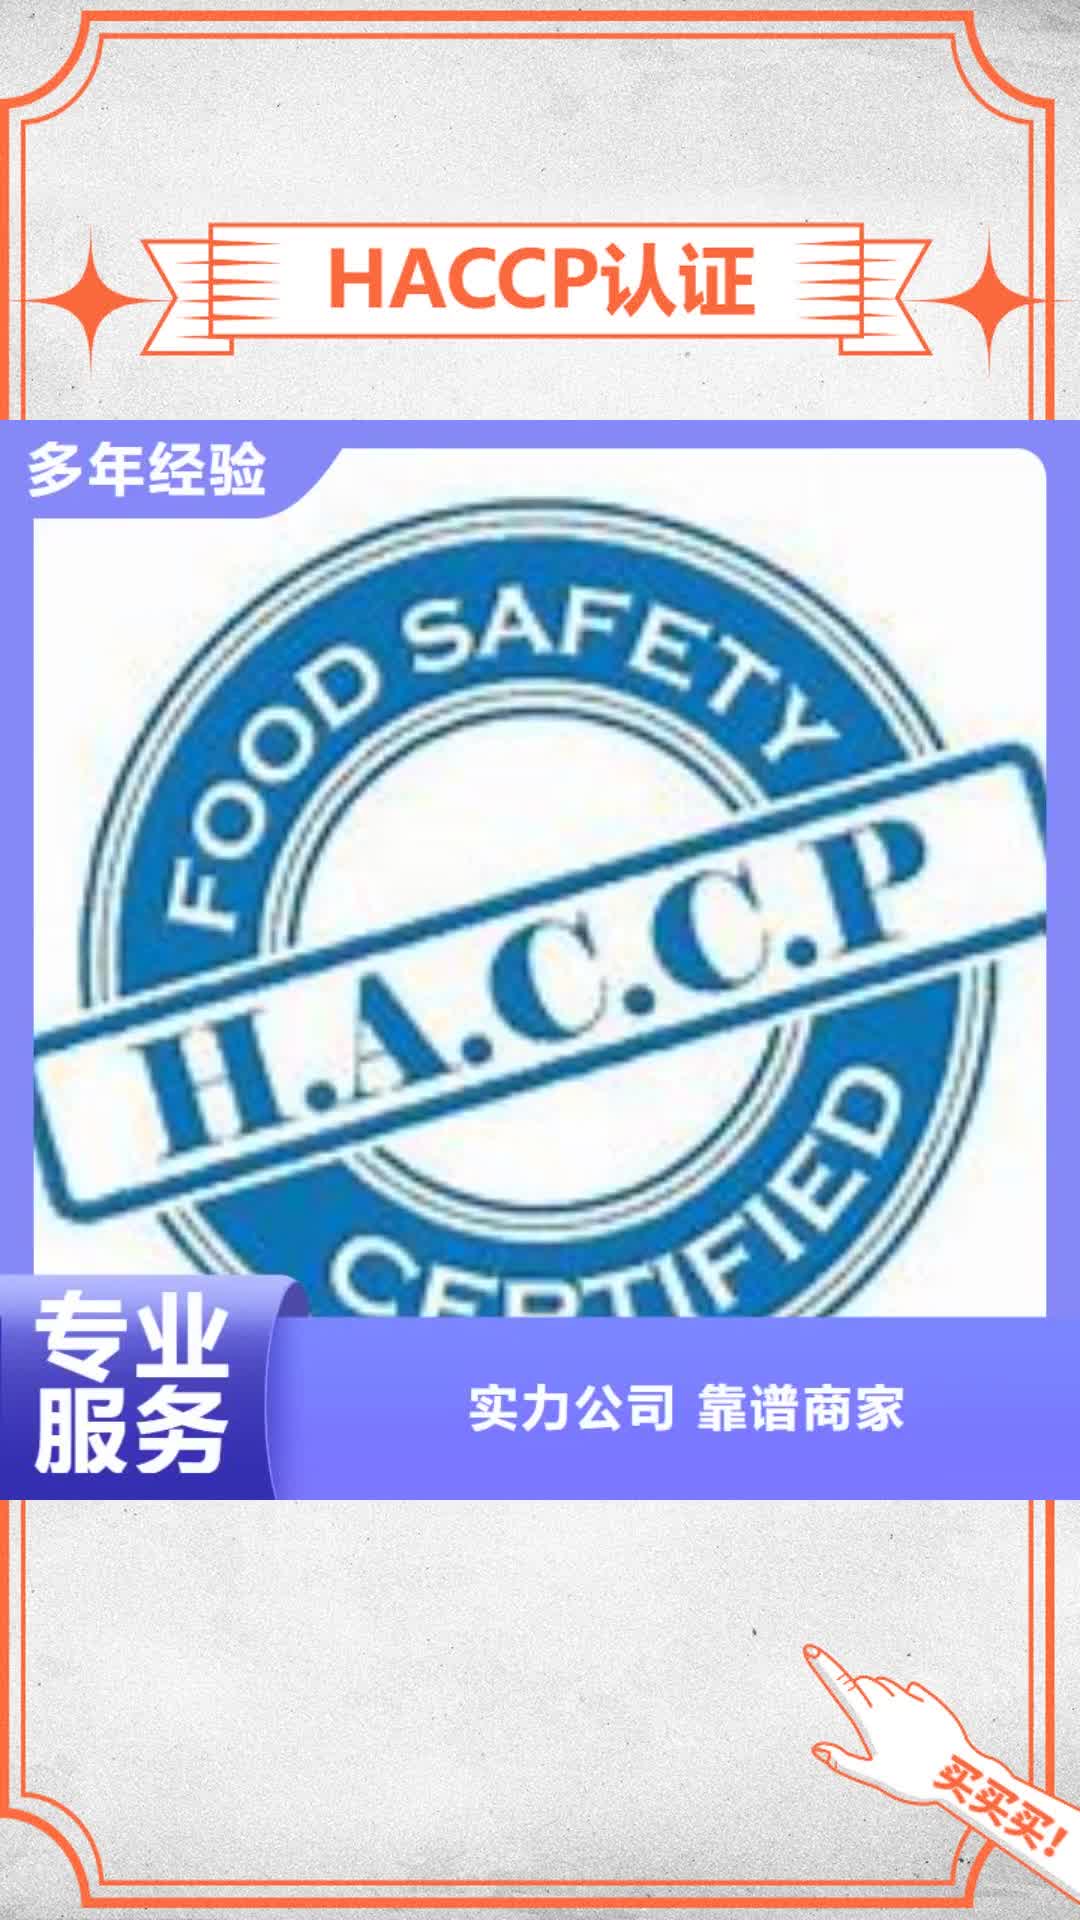 景德镇【HACCP认证】 ISO9001\ISO9000\ISO14001认证质量保证